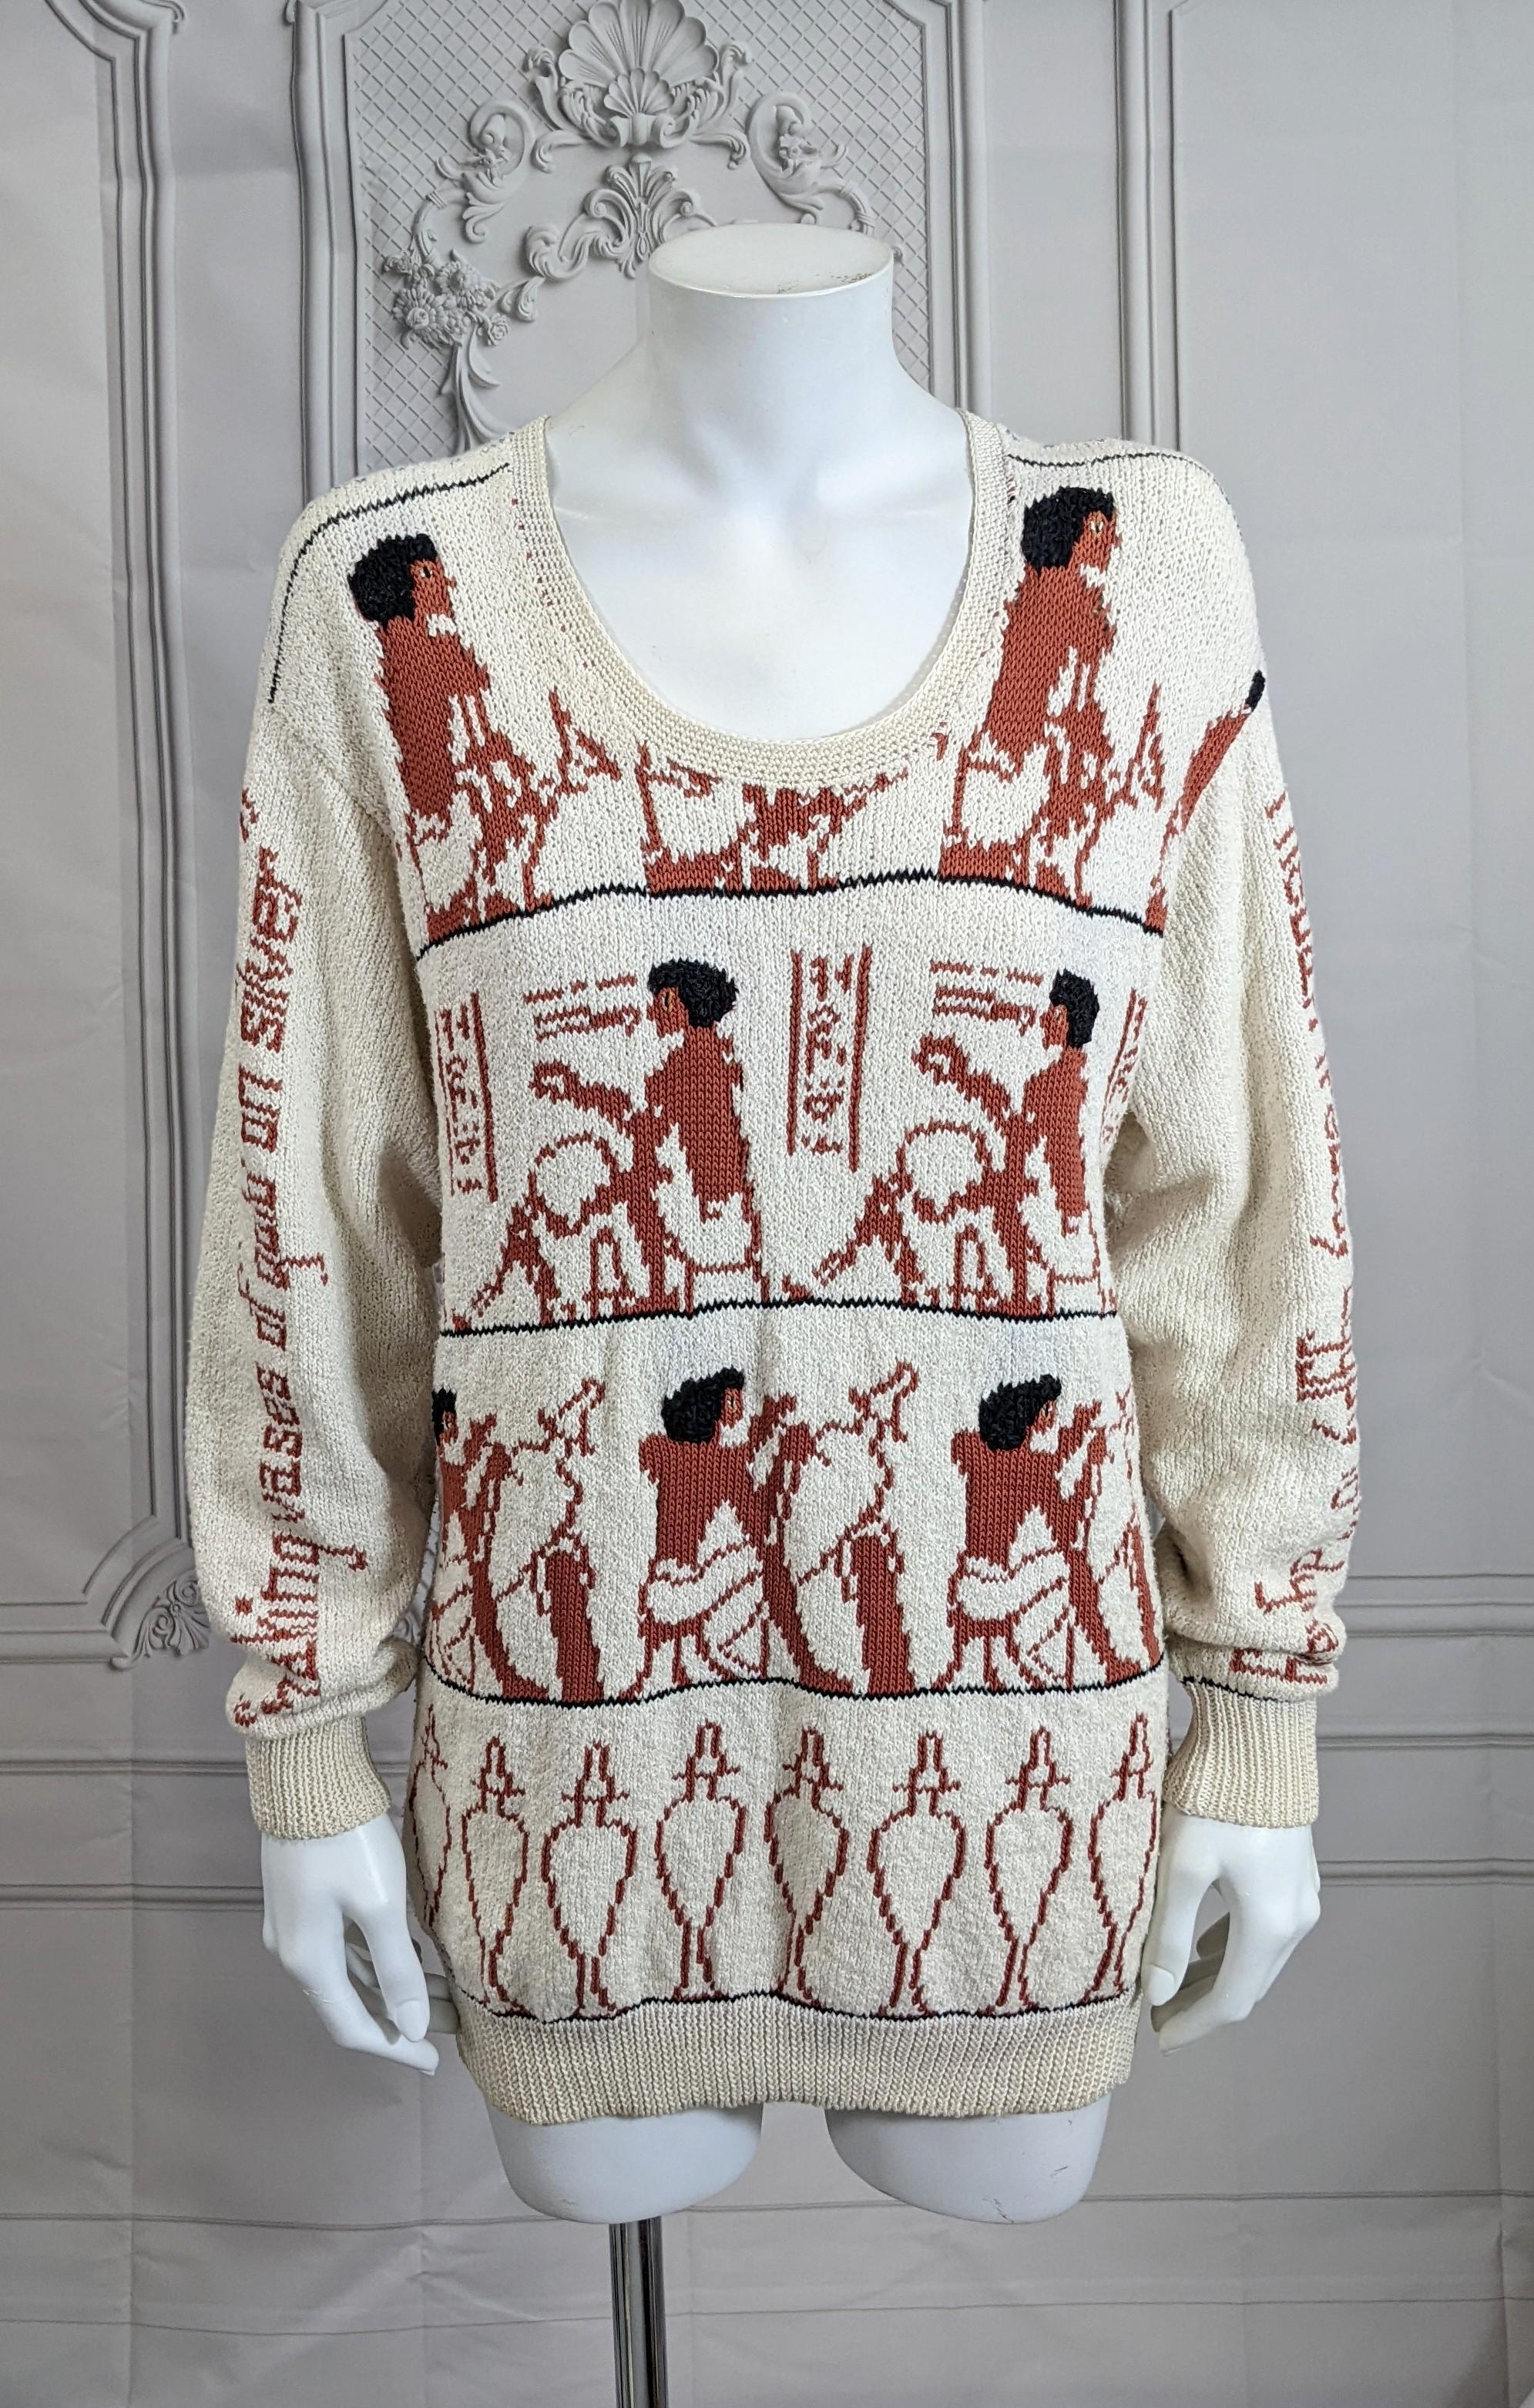 Charmante und ungewöhnliche handgestrickte Baumwolle Eygptian Themed Sweater von Dia North of Boston um 1980's. Zu den Motiven gehört die Herstellung von silbernen und goldenen Urnen, und der Prozess ist auf jedem Ärmel beschrieben.  Größe S/M.